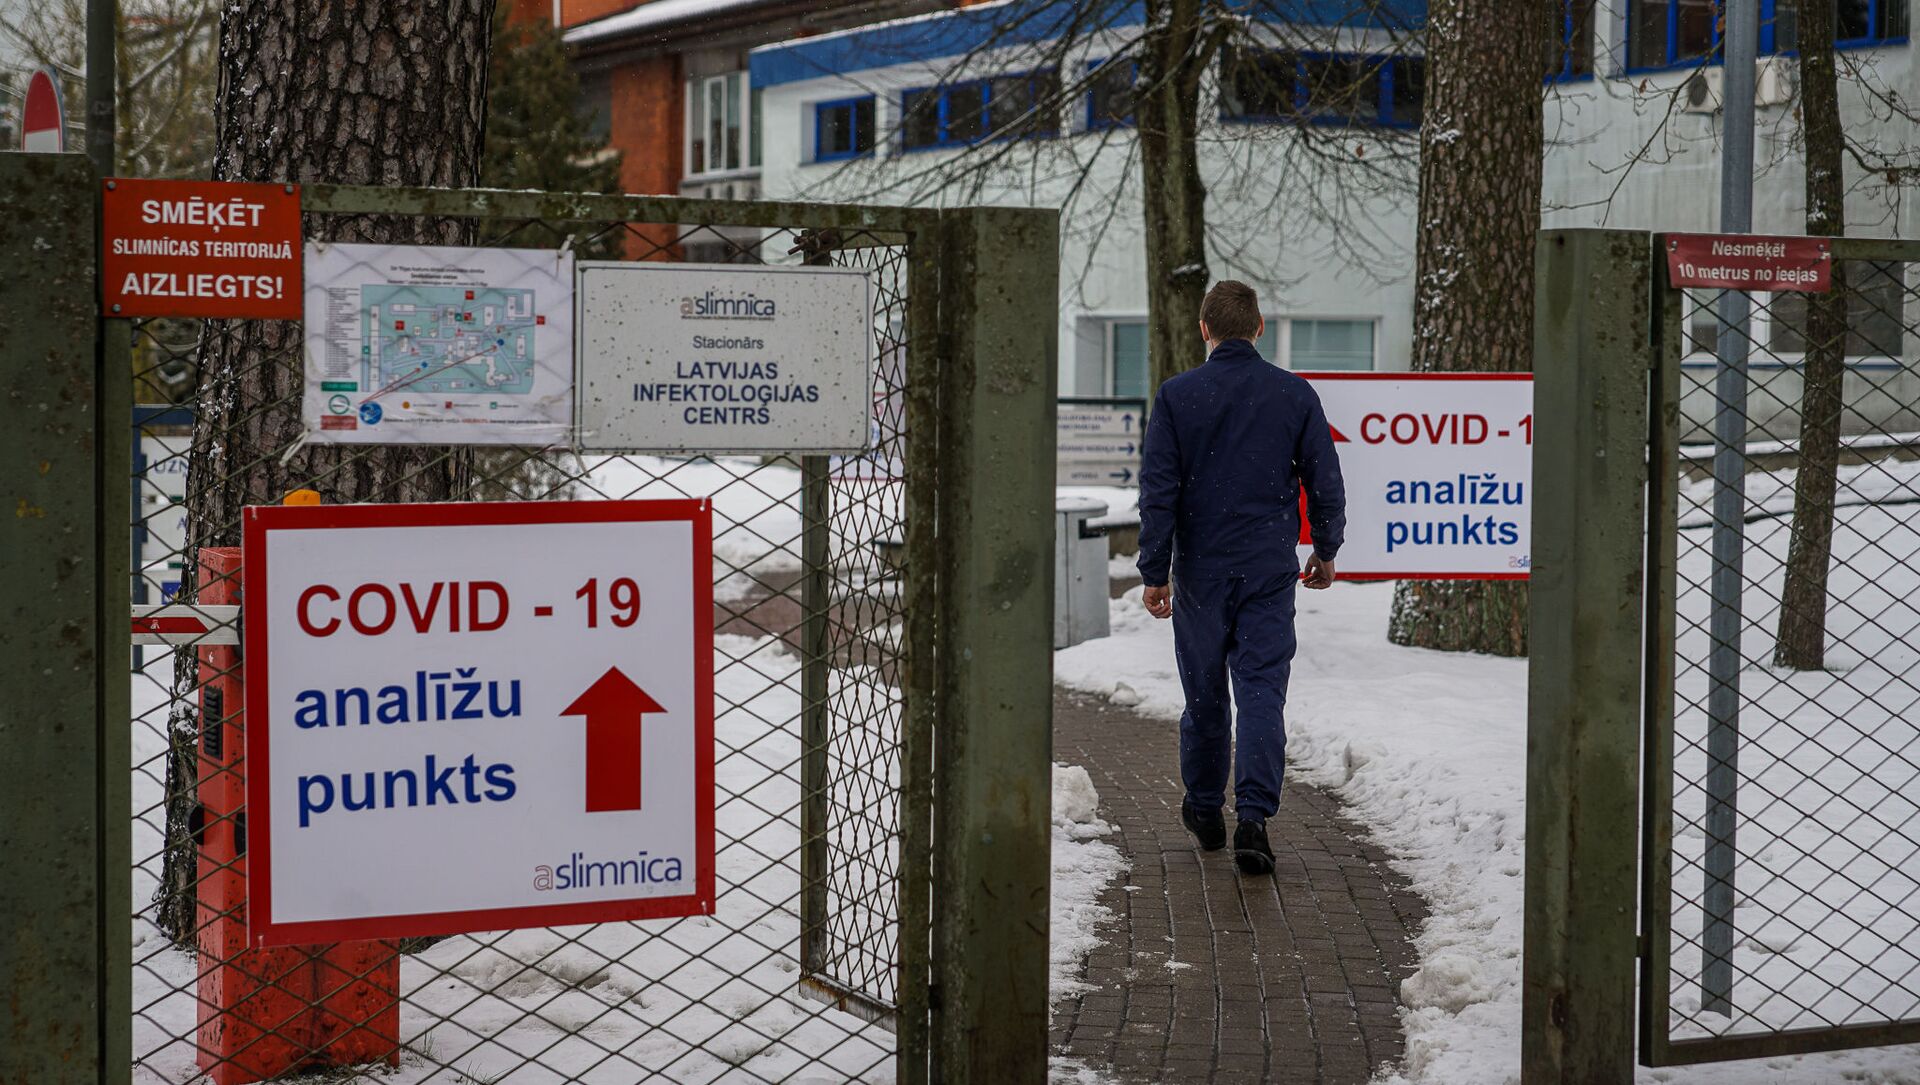 Мужчина направляется в пункт приема тестов на COVID-19 в Латвийском центре инфектологии - Sputnik Латвия, 1920, 02.03.2021